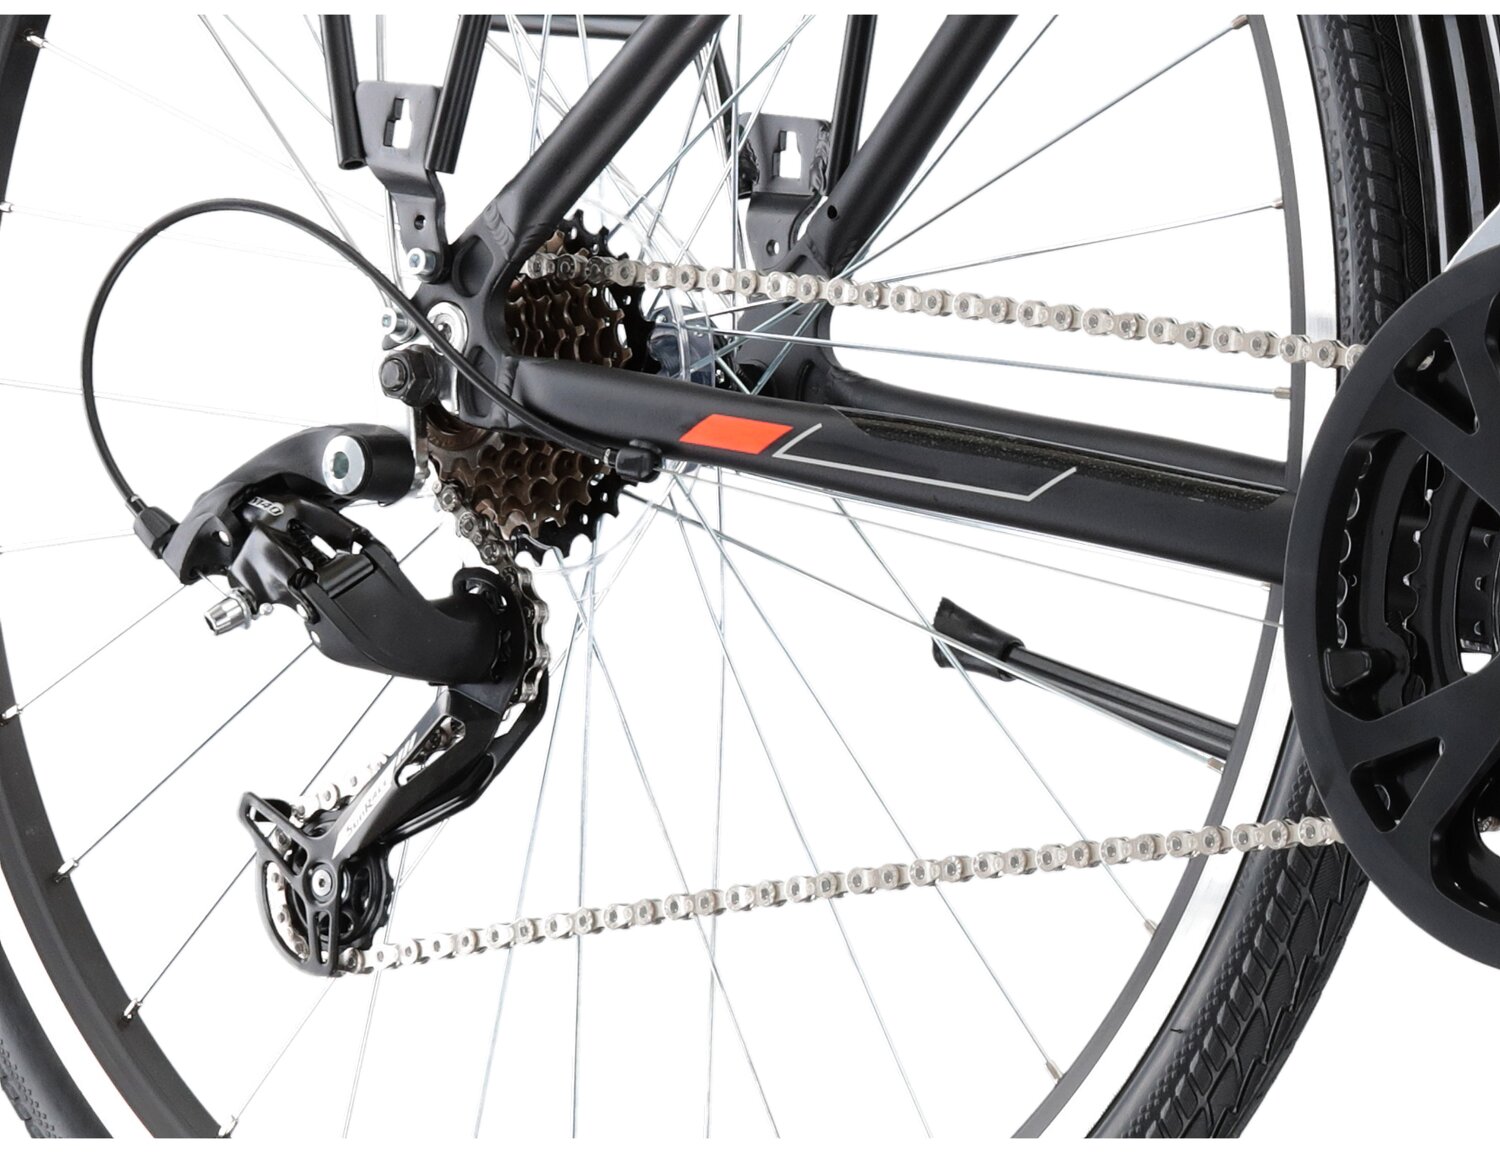  Tylna siedmiobiegowa przerzutka Sunrace RDM41 oraz hamulce v-brake w rowerze trekkingowym KROSS Explorer 1.0 SR 